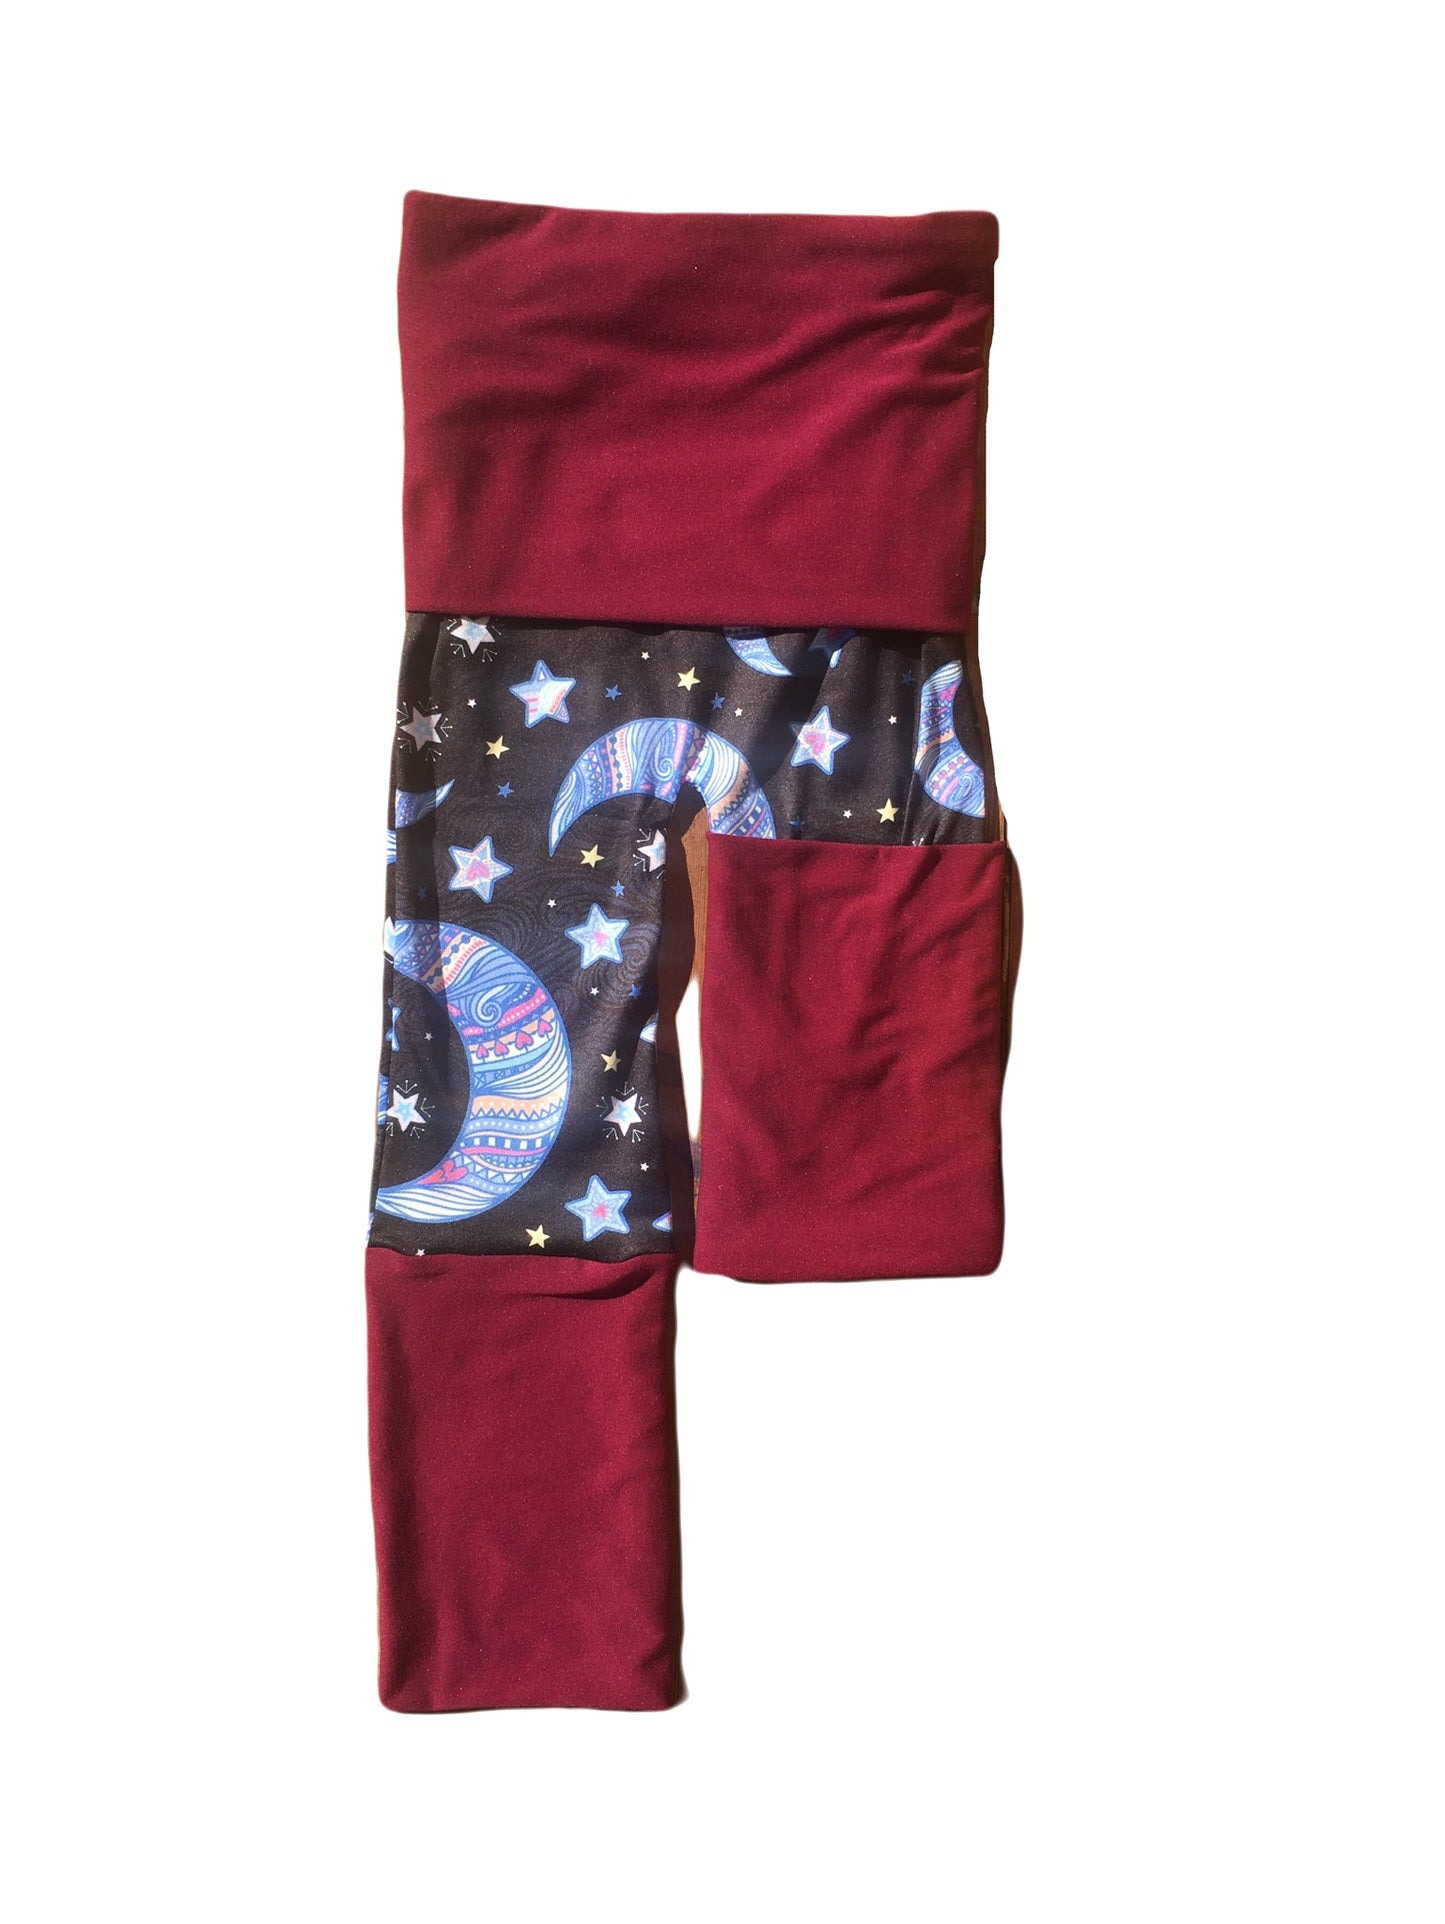 Adjustable Pants - Moon & Stars with Wine